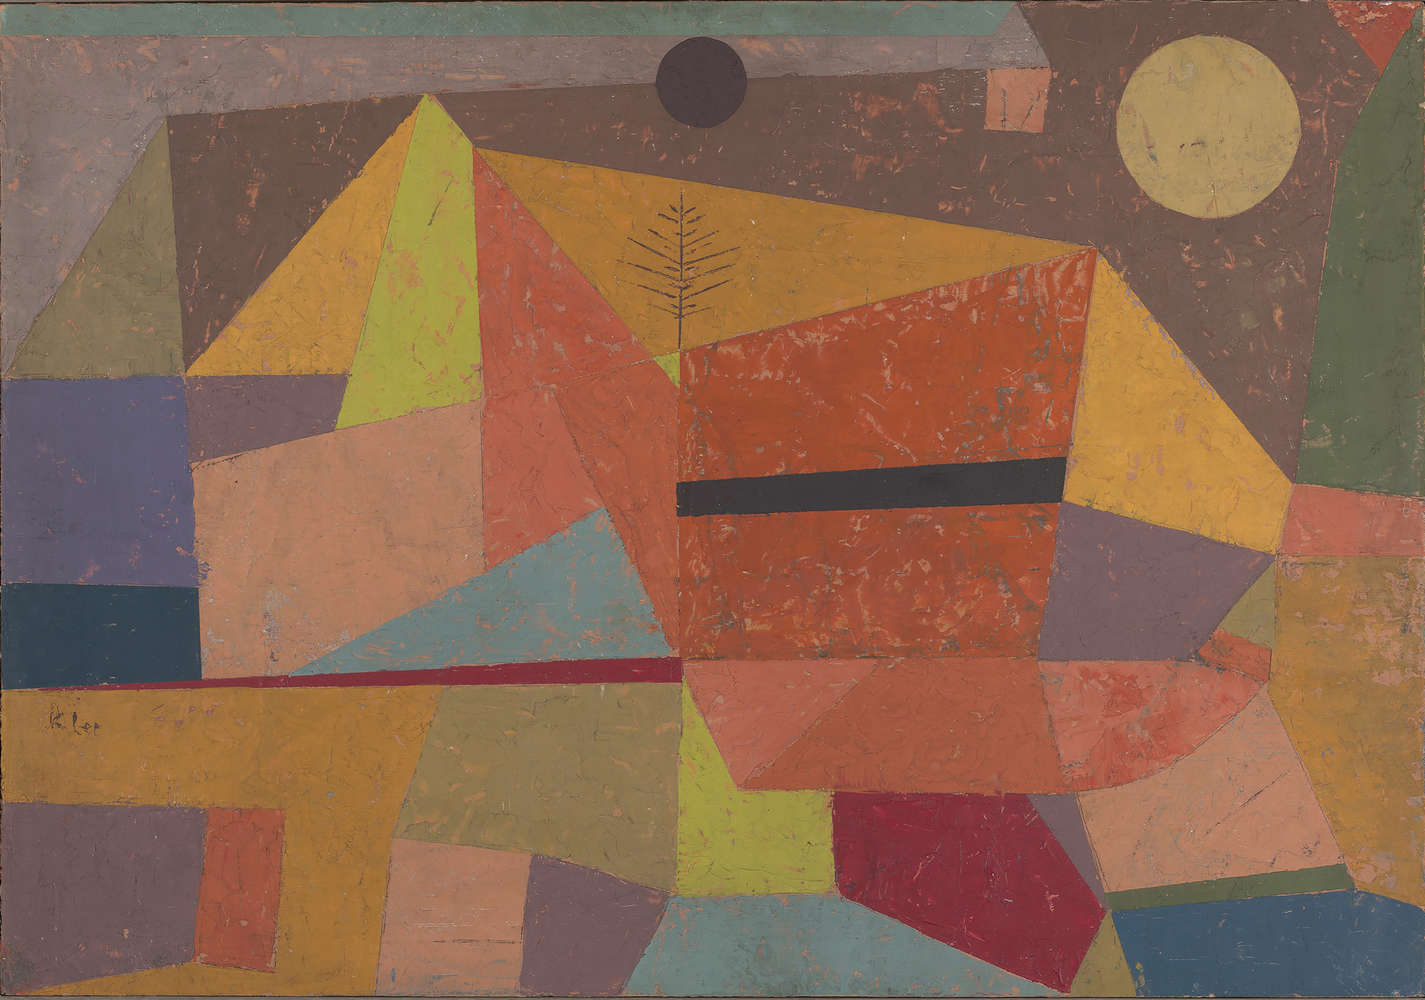             Vrolijk berglandschap" muurschildering van Paul Klee
        